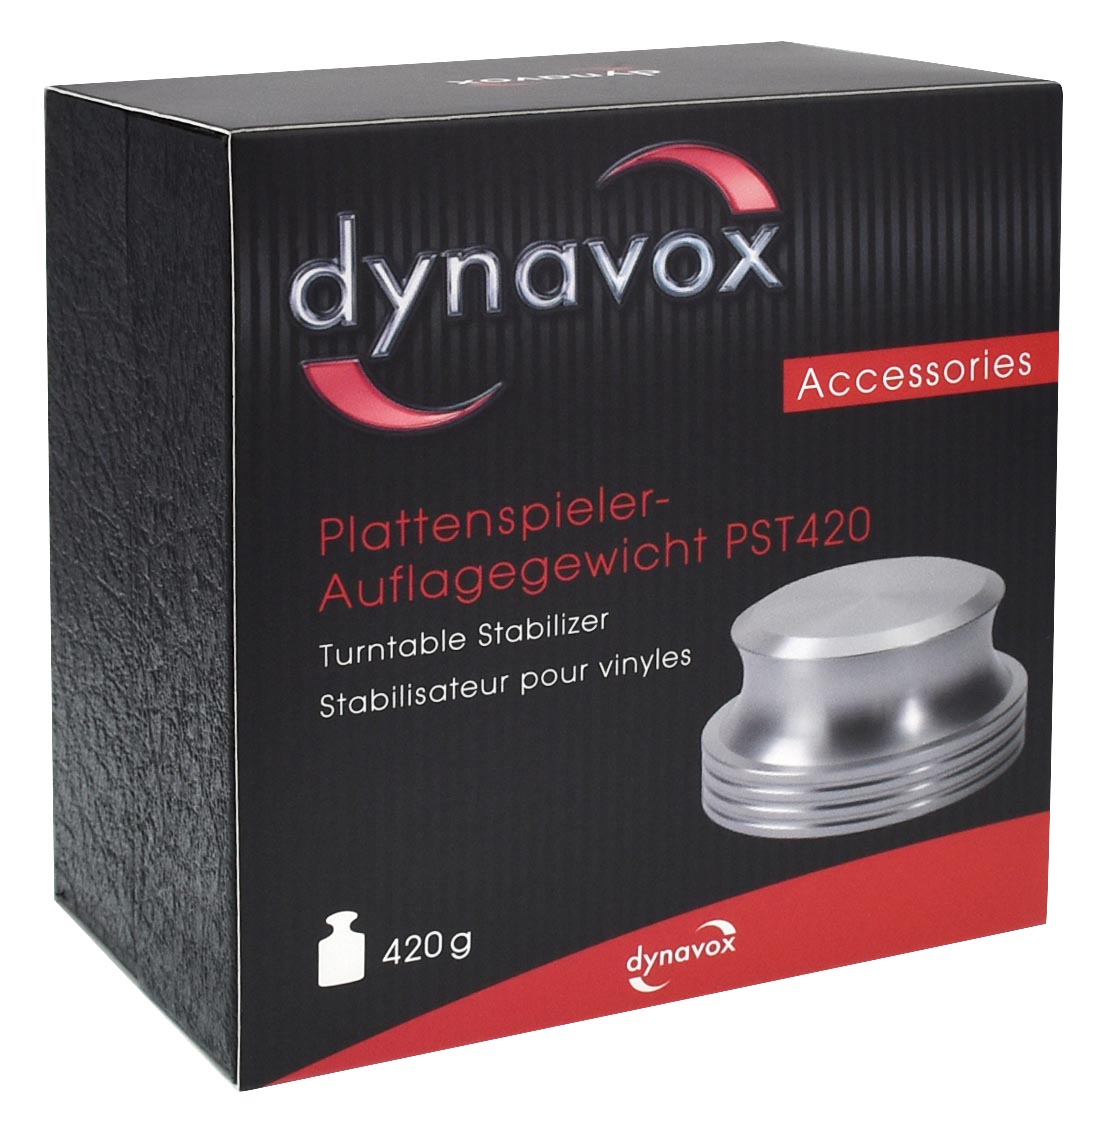 So wird das Dynavox Plattenspieler Auflagegewicht geliefert.